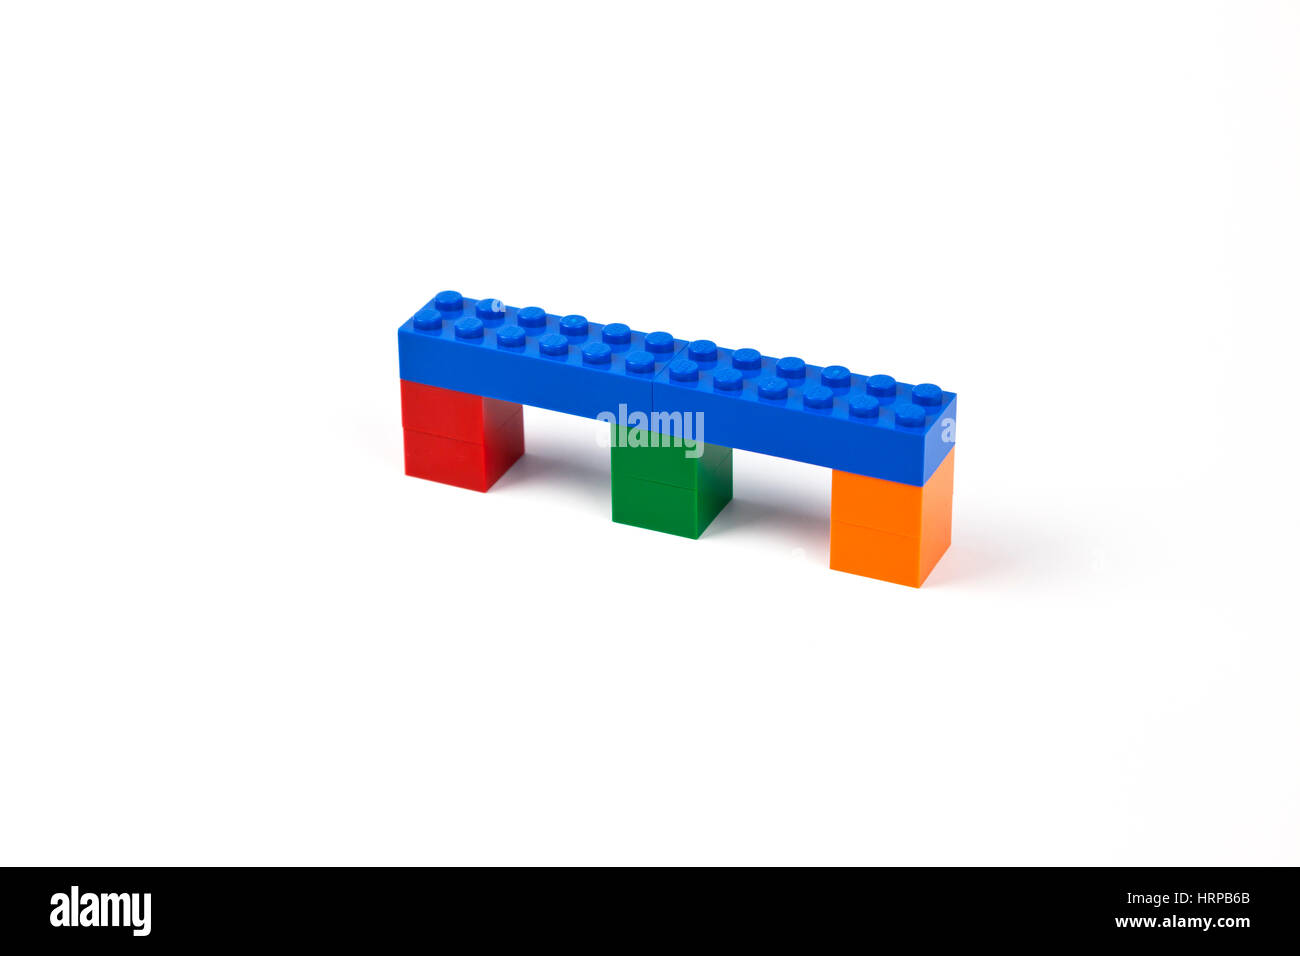 Blue bridge ou modèle viaduc de briques Lego ou des morceaux qui repose sur trois piliers. Banque D'Images